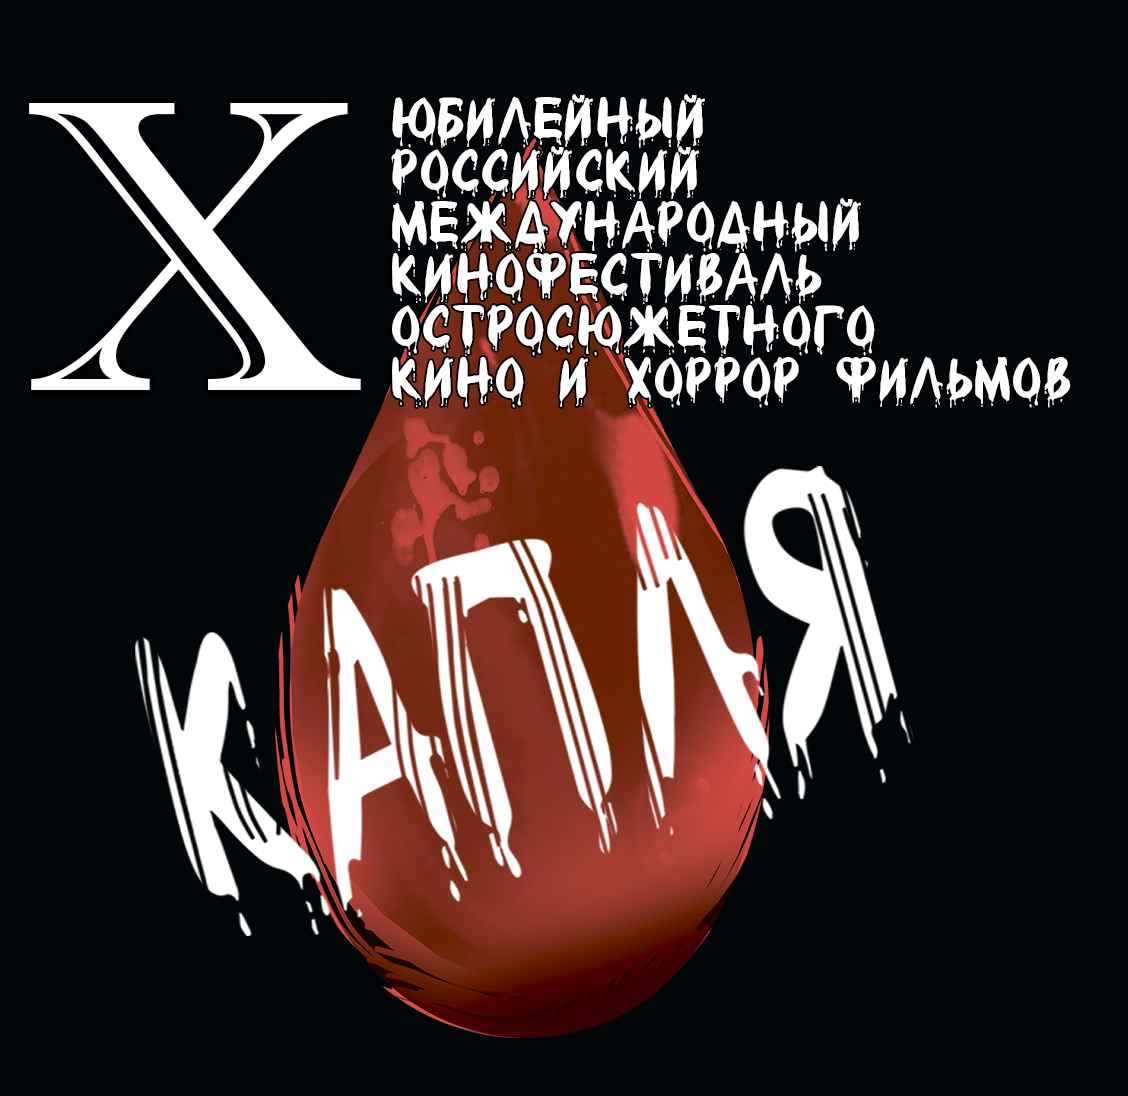 X Российский международный кинофестиваль остросюжетного кино и хоррор фильмов «КАПЛЯ»